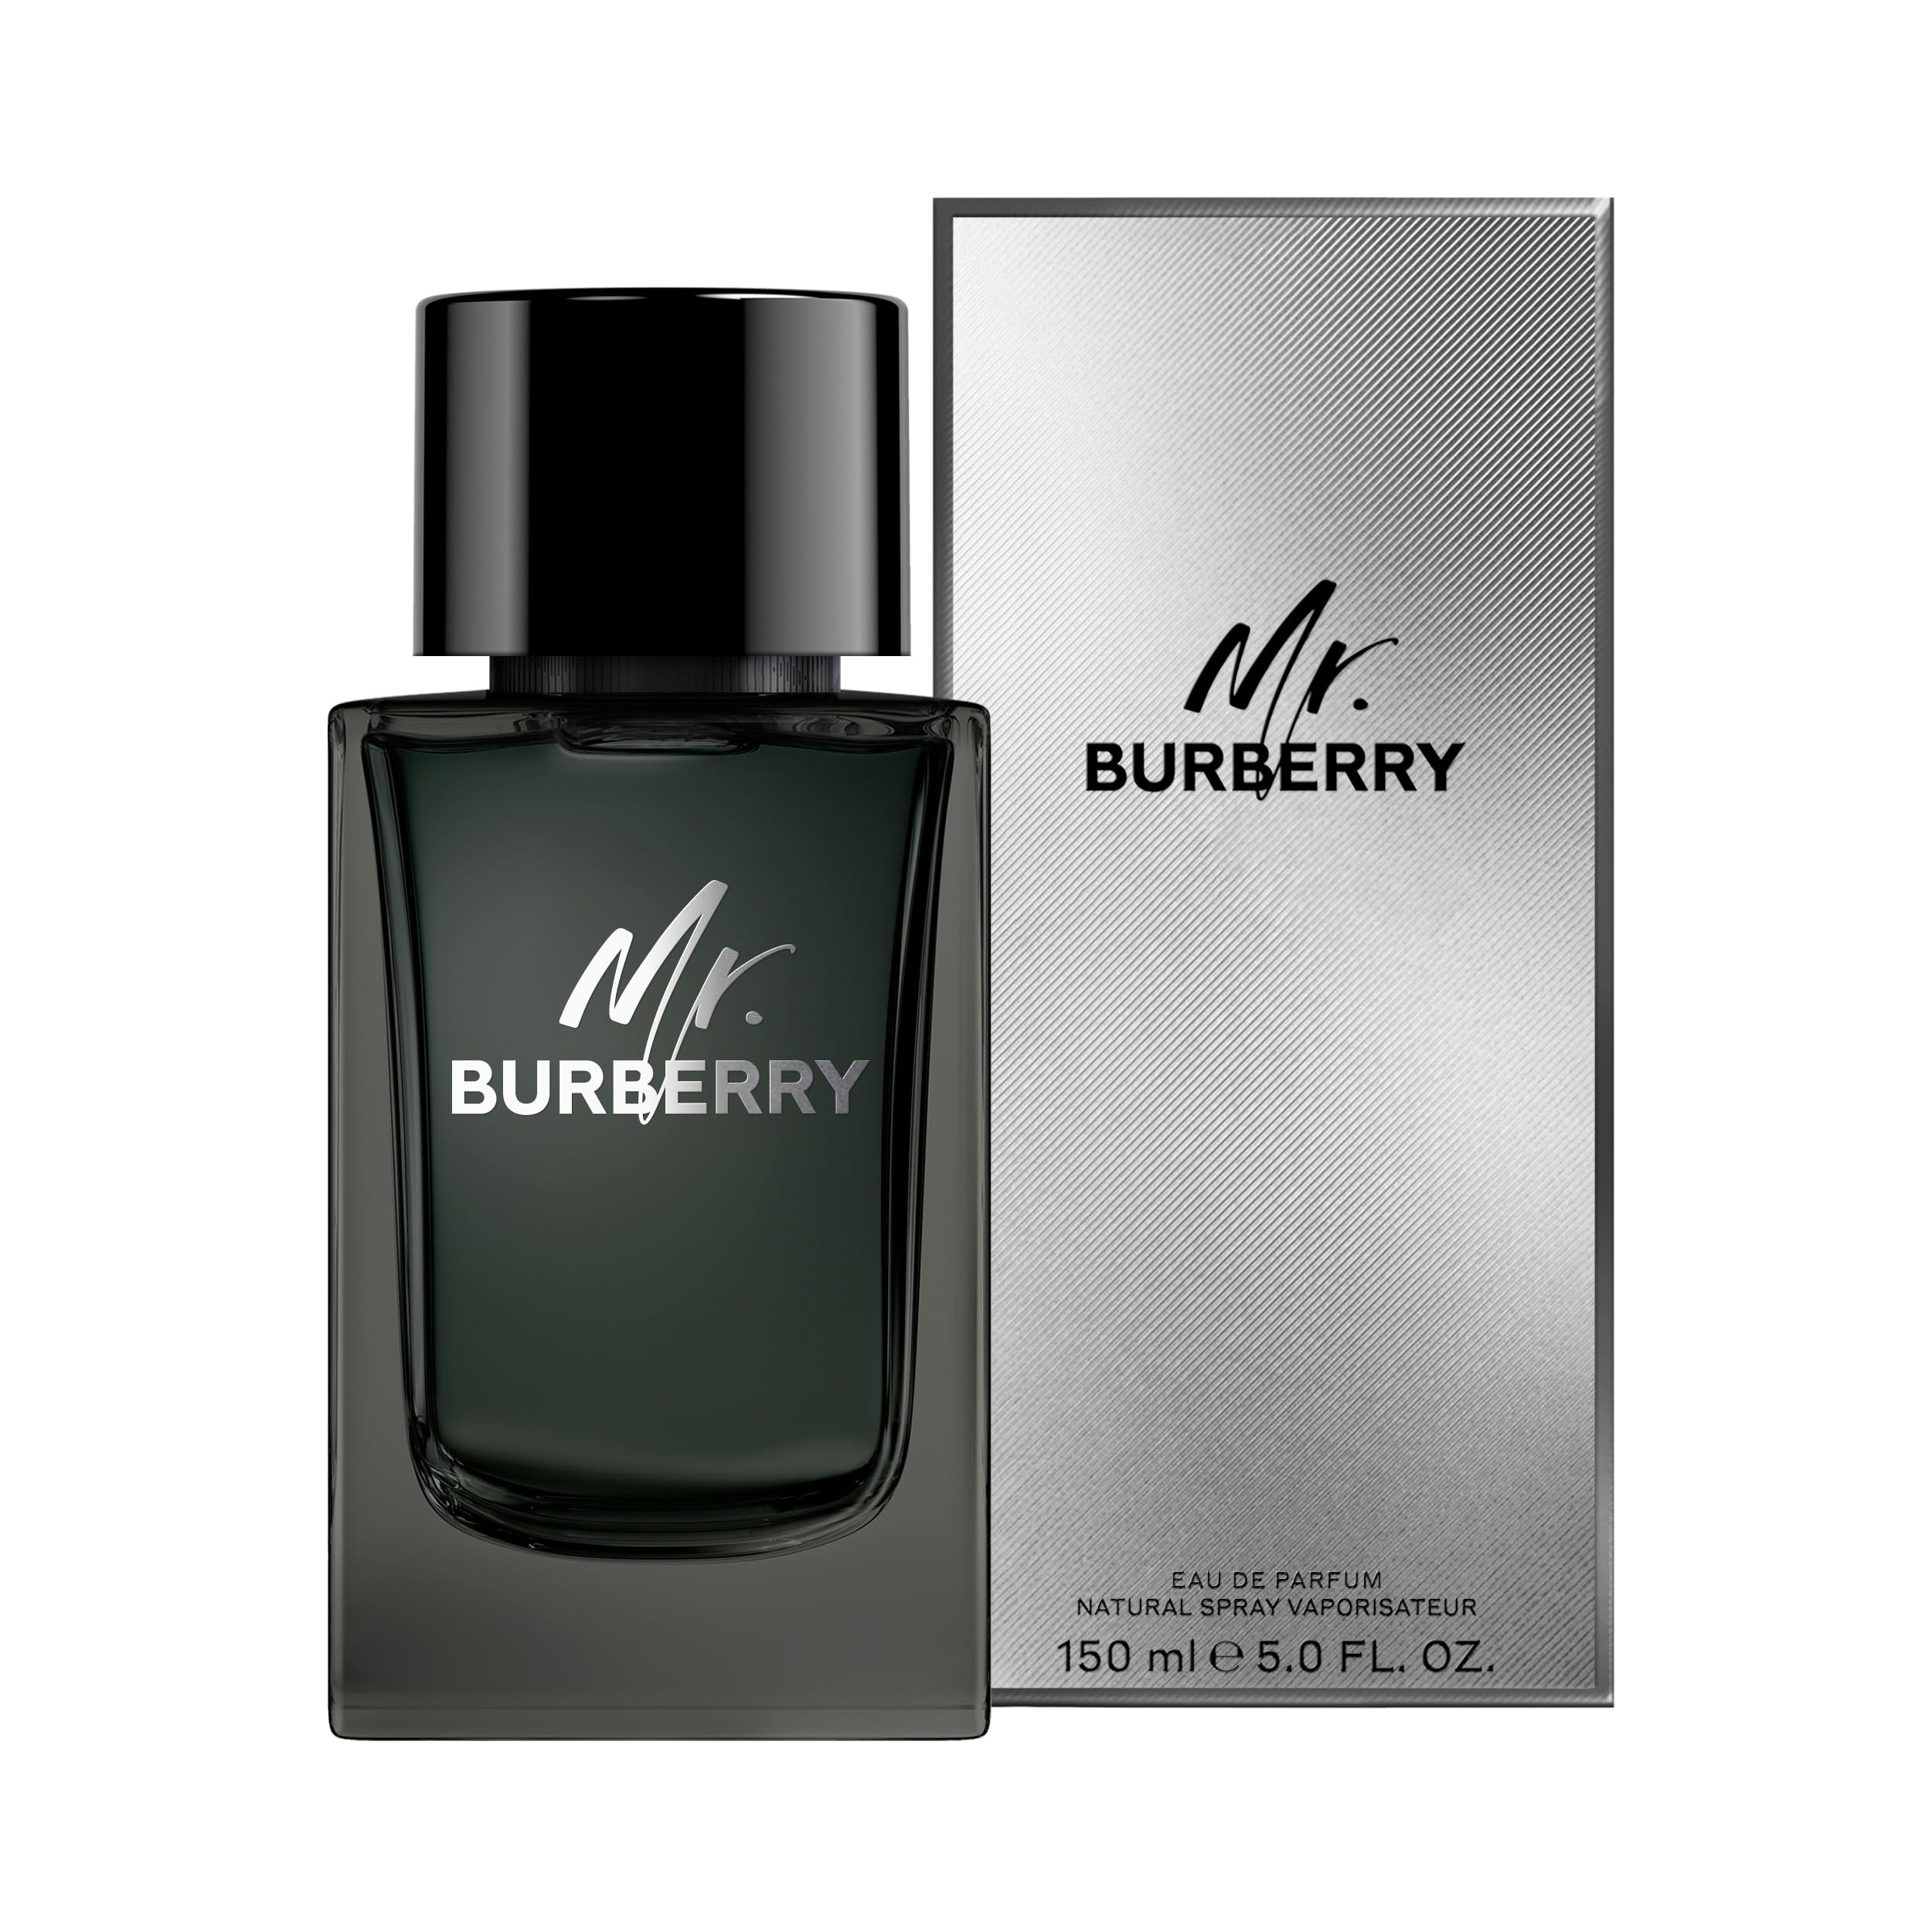 Burberry Mr. Burberry Eau de Parfum for Men - Notes of tarragon, cinnamon, patchouli and vetiver